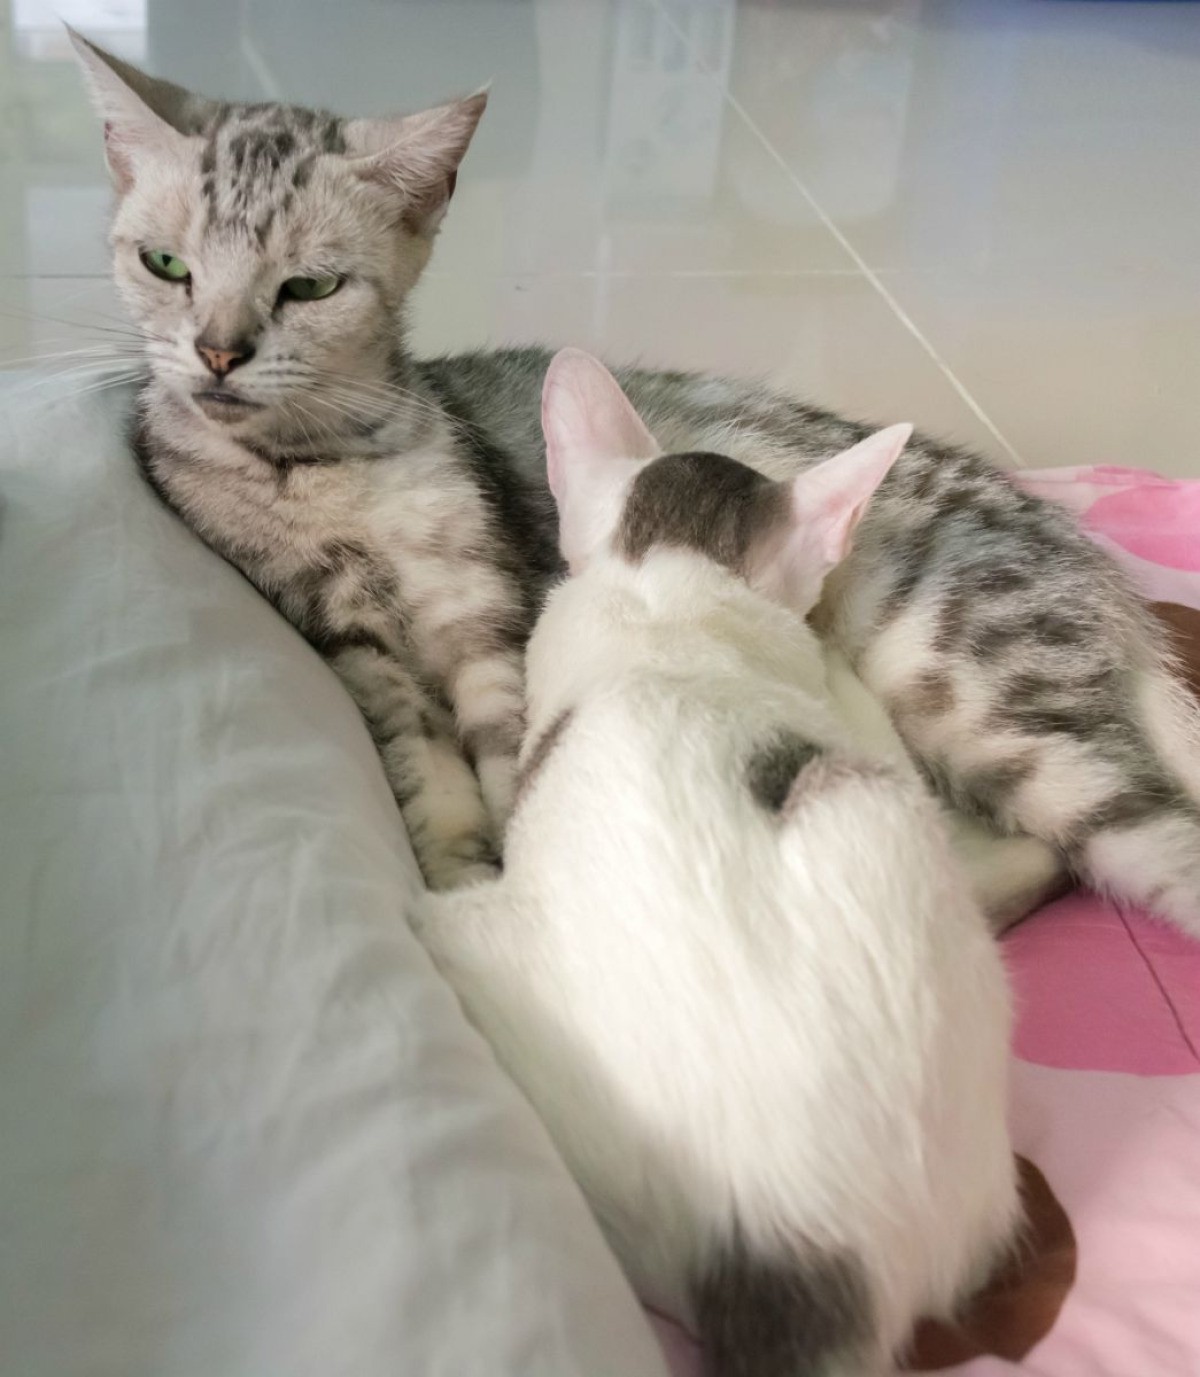  Kitten  Trying to Nurse  on Older Cat  ThriftyFun